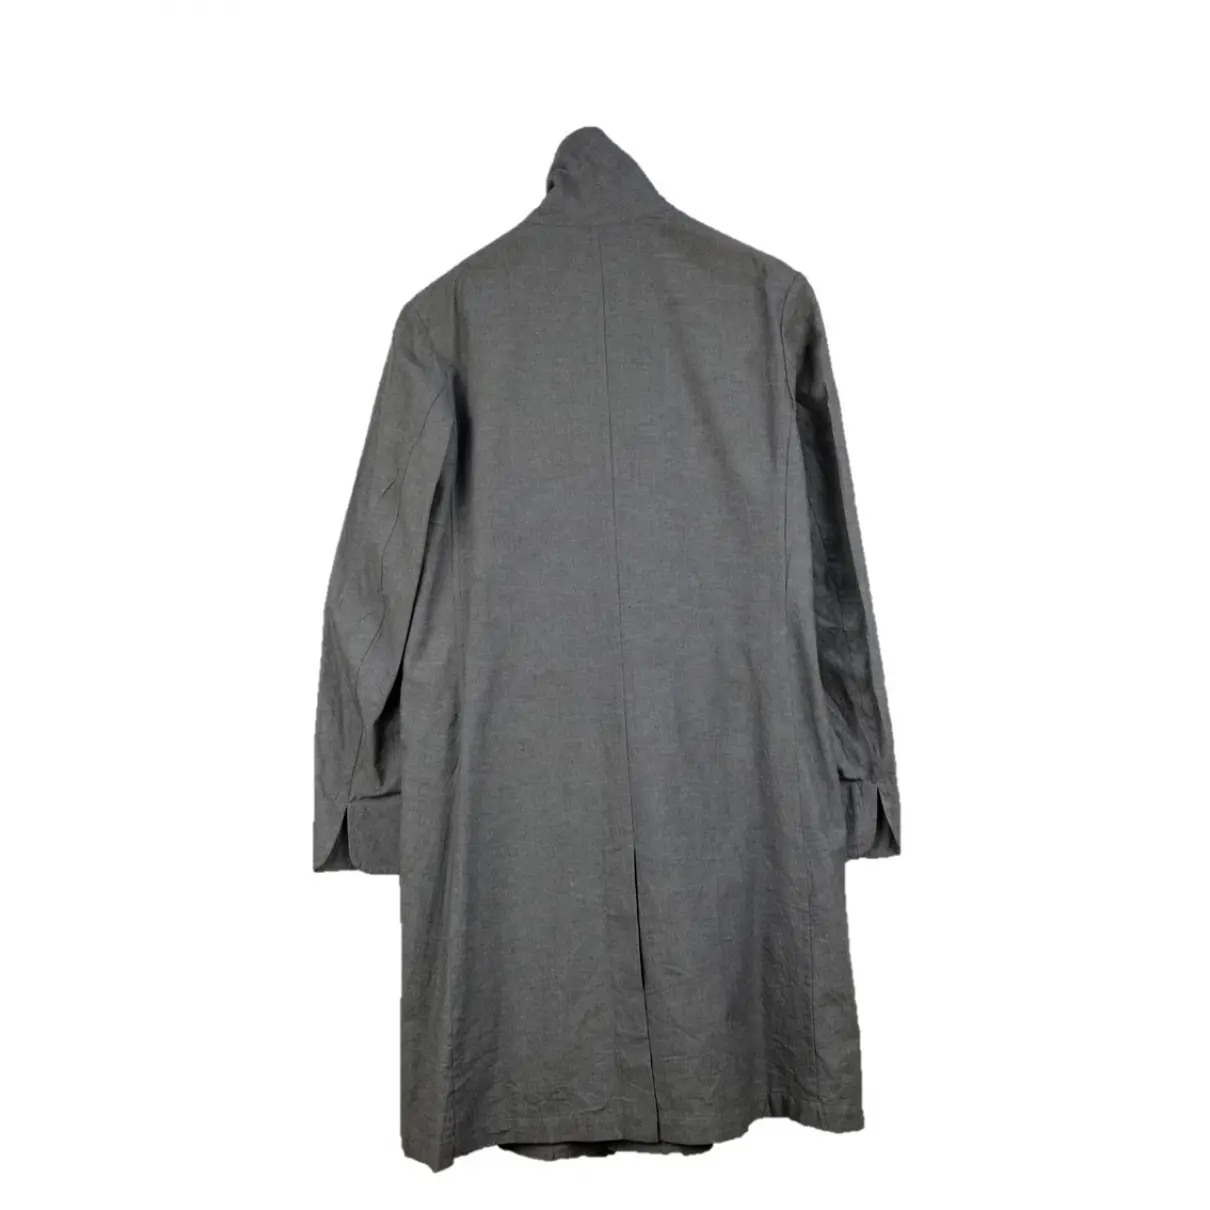 Buy Yohji Yamamoto Jacket online